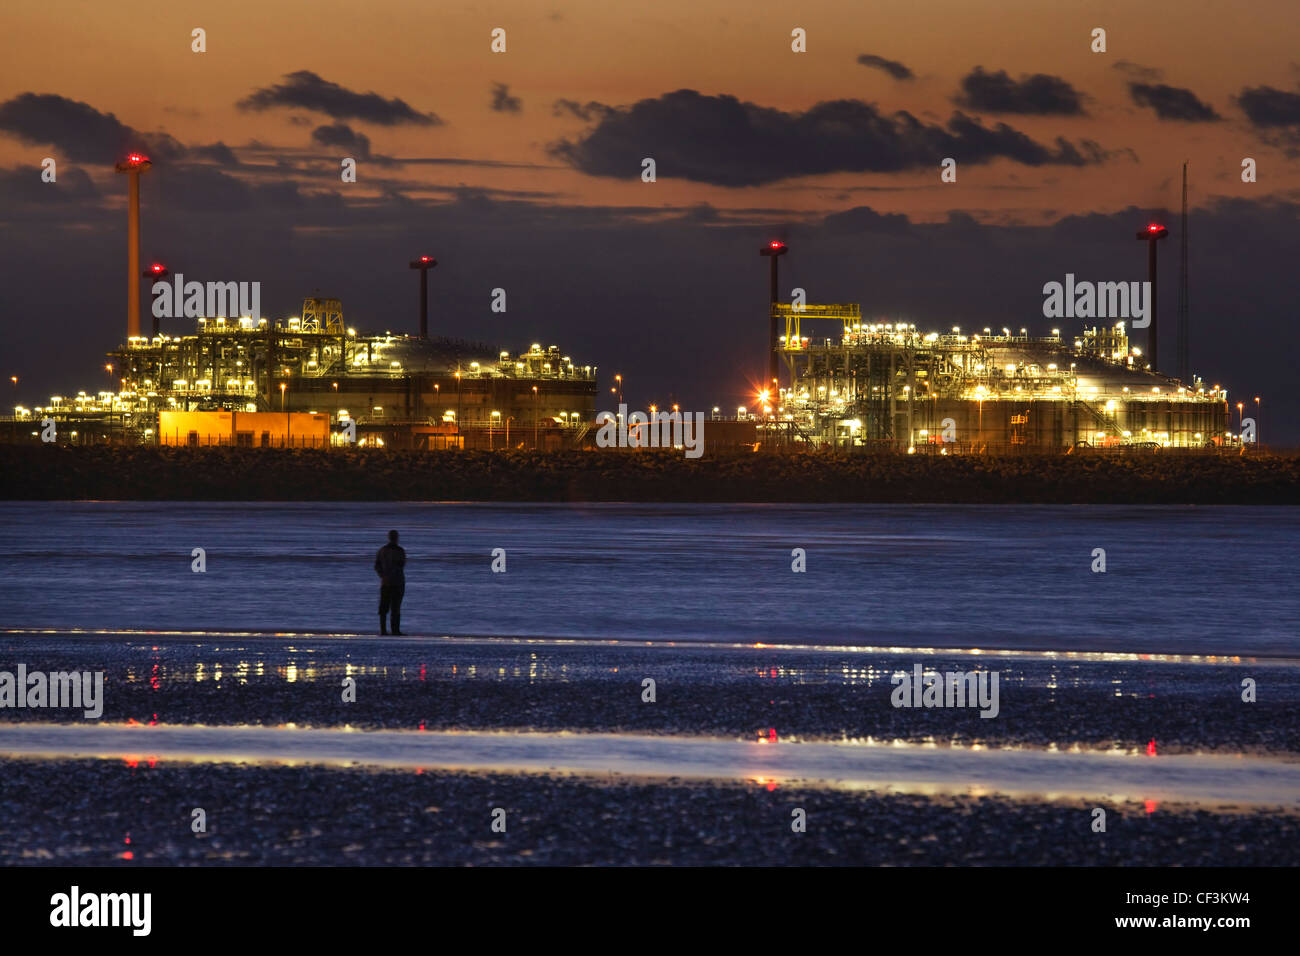 Mann, Blick vom Strand auf beleuchteten Gasterminal in Zeebrugge Nordseehafen bei Sonnenuntergang, Belgien Stockfoto